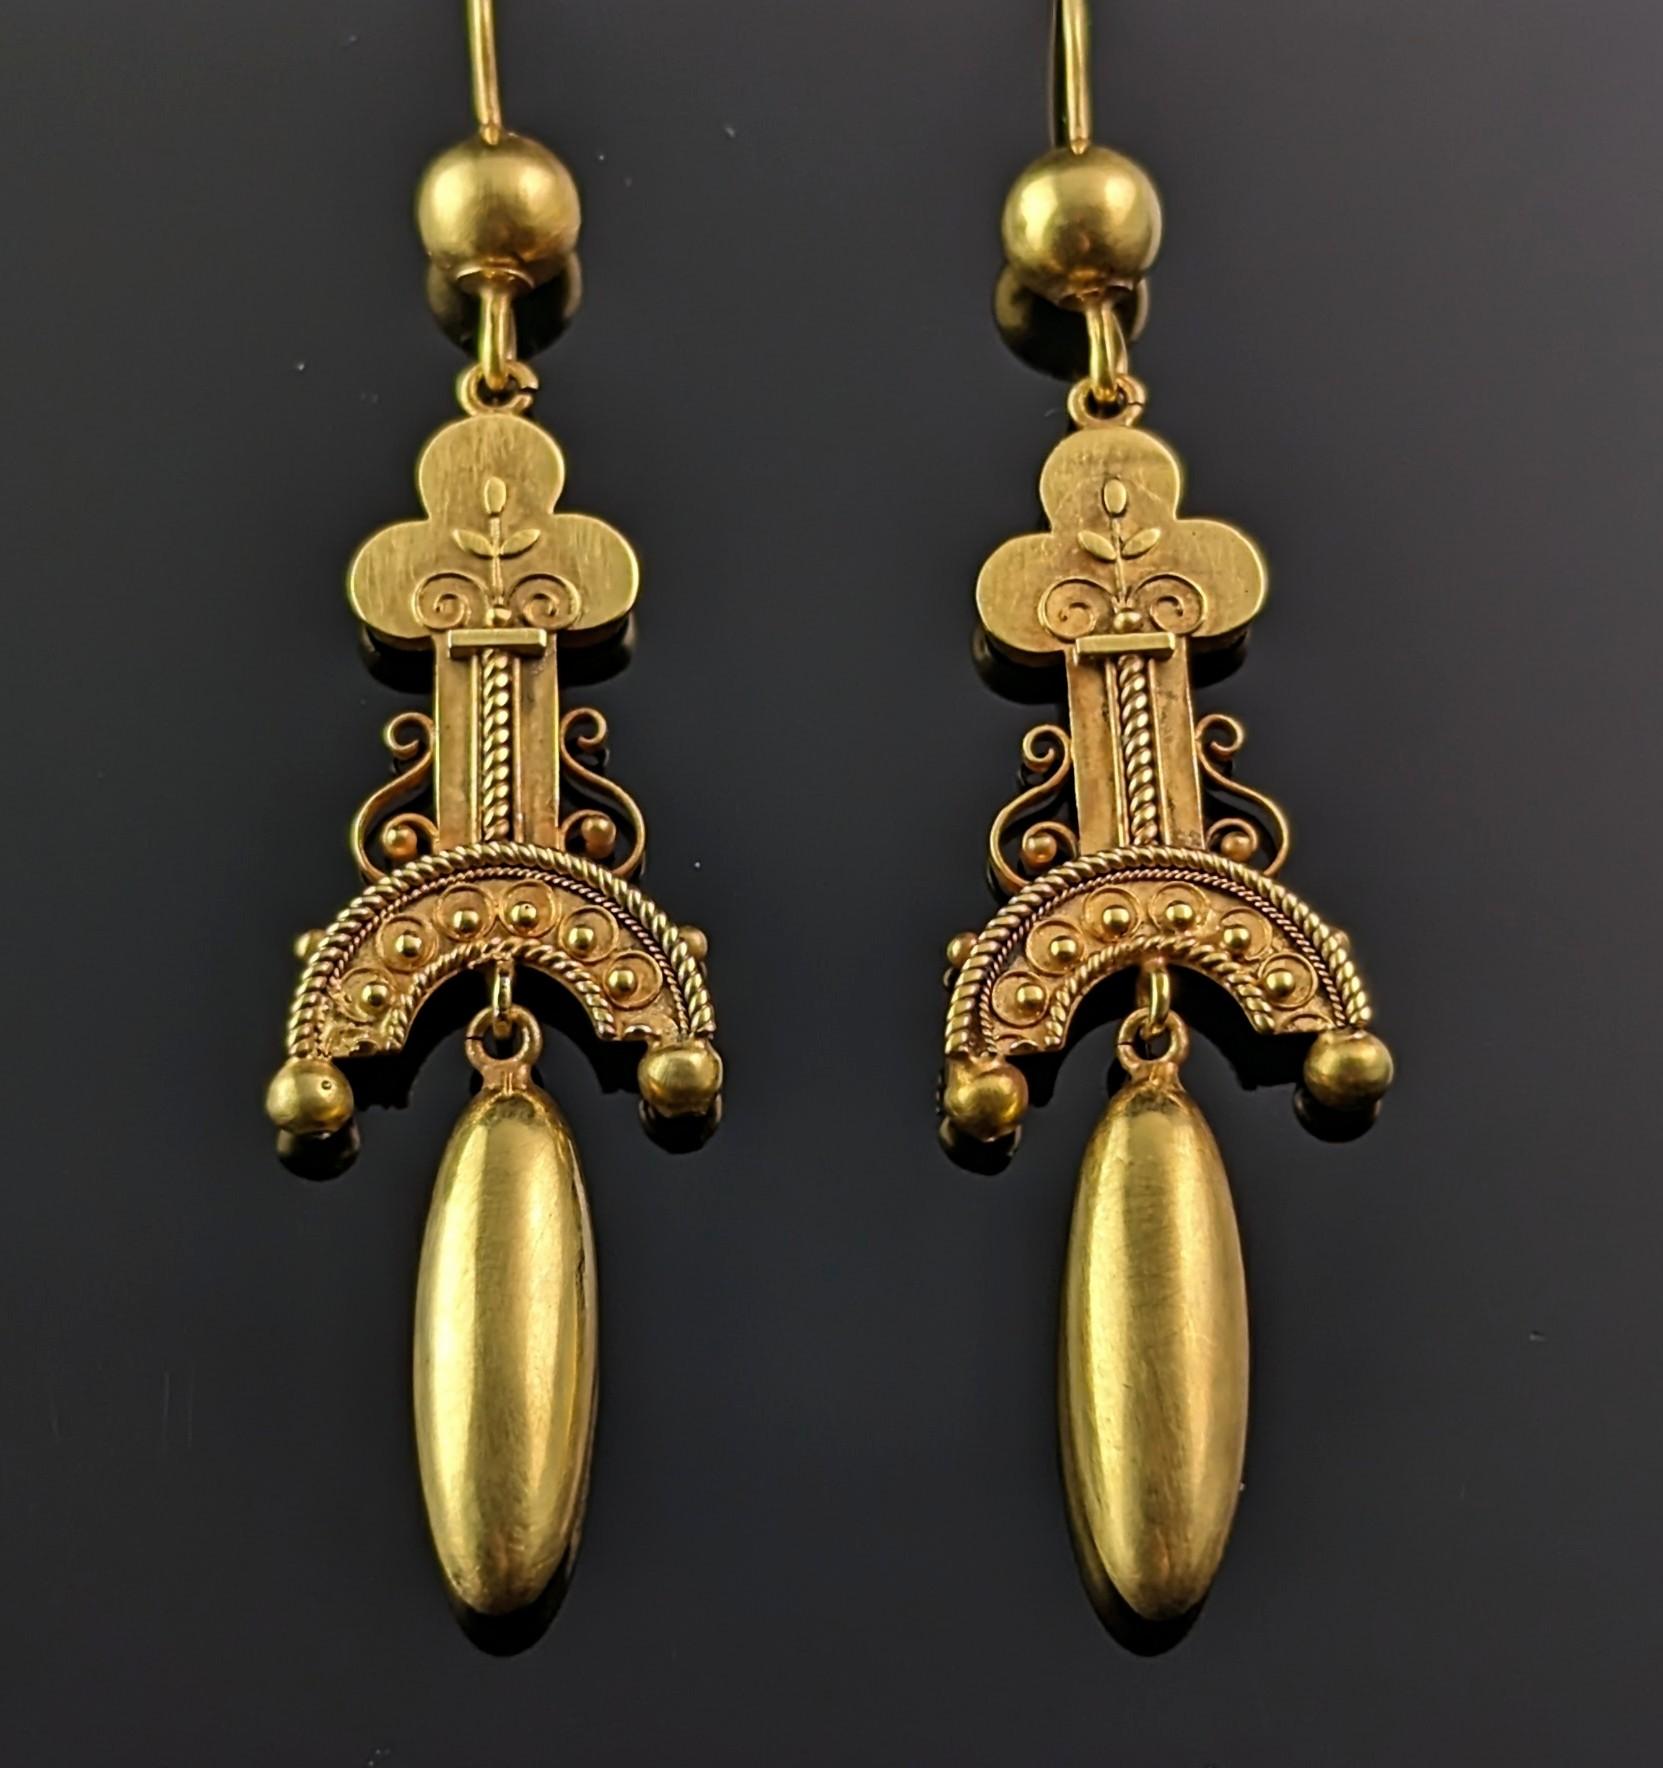 Ein wirklich atemberaubendes Paar antiker Ohrringe aus 15 Karat Gold im Stil der etruskischen Wiedergeburt.

Es handelt sich um baumelnde Ohrringe, deren Oberteile aus einer dreiflügeligen oder keulenförmigen Säule mit zarten Cannetille-Details und